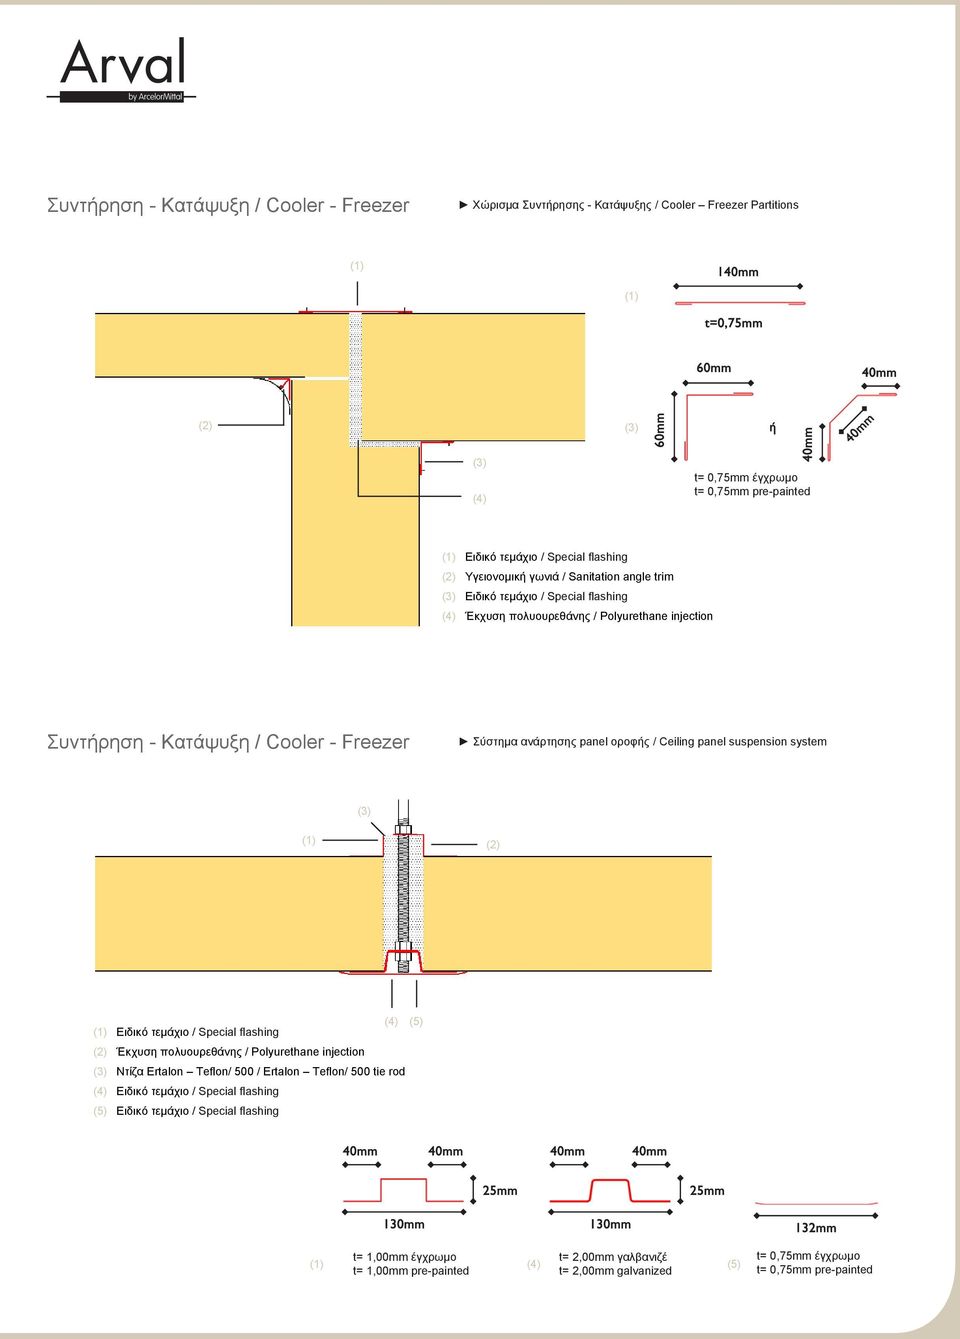 οροφής / Ceiling panel suspension system (3) (2) (4) (5) Ειδικό τεμάχιο / Special flashing (2) Έκχυση πολυουρεθάνης / Polyurethane injection (3) Ντίζα Ertalon Teflon/ 500 / Ertalon Teflon/ 500 tie